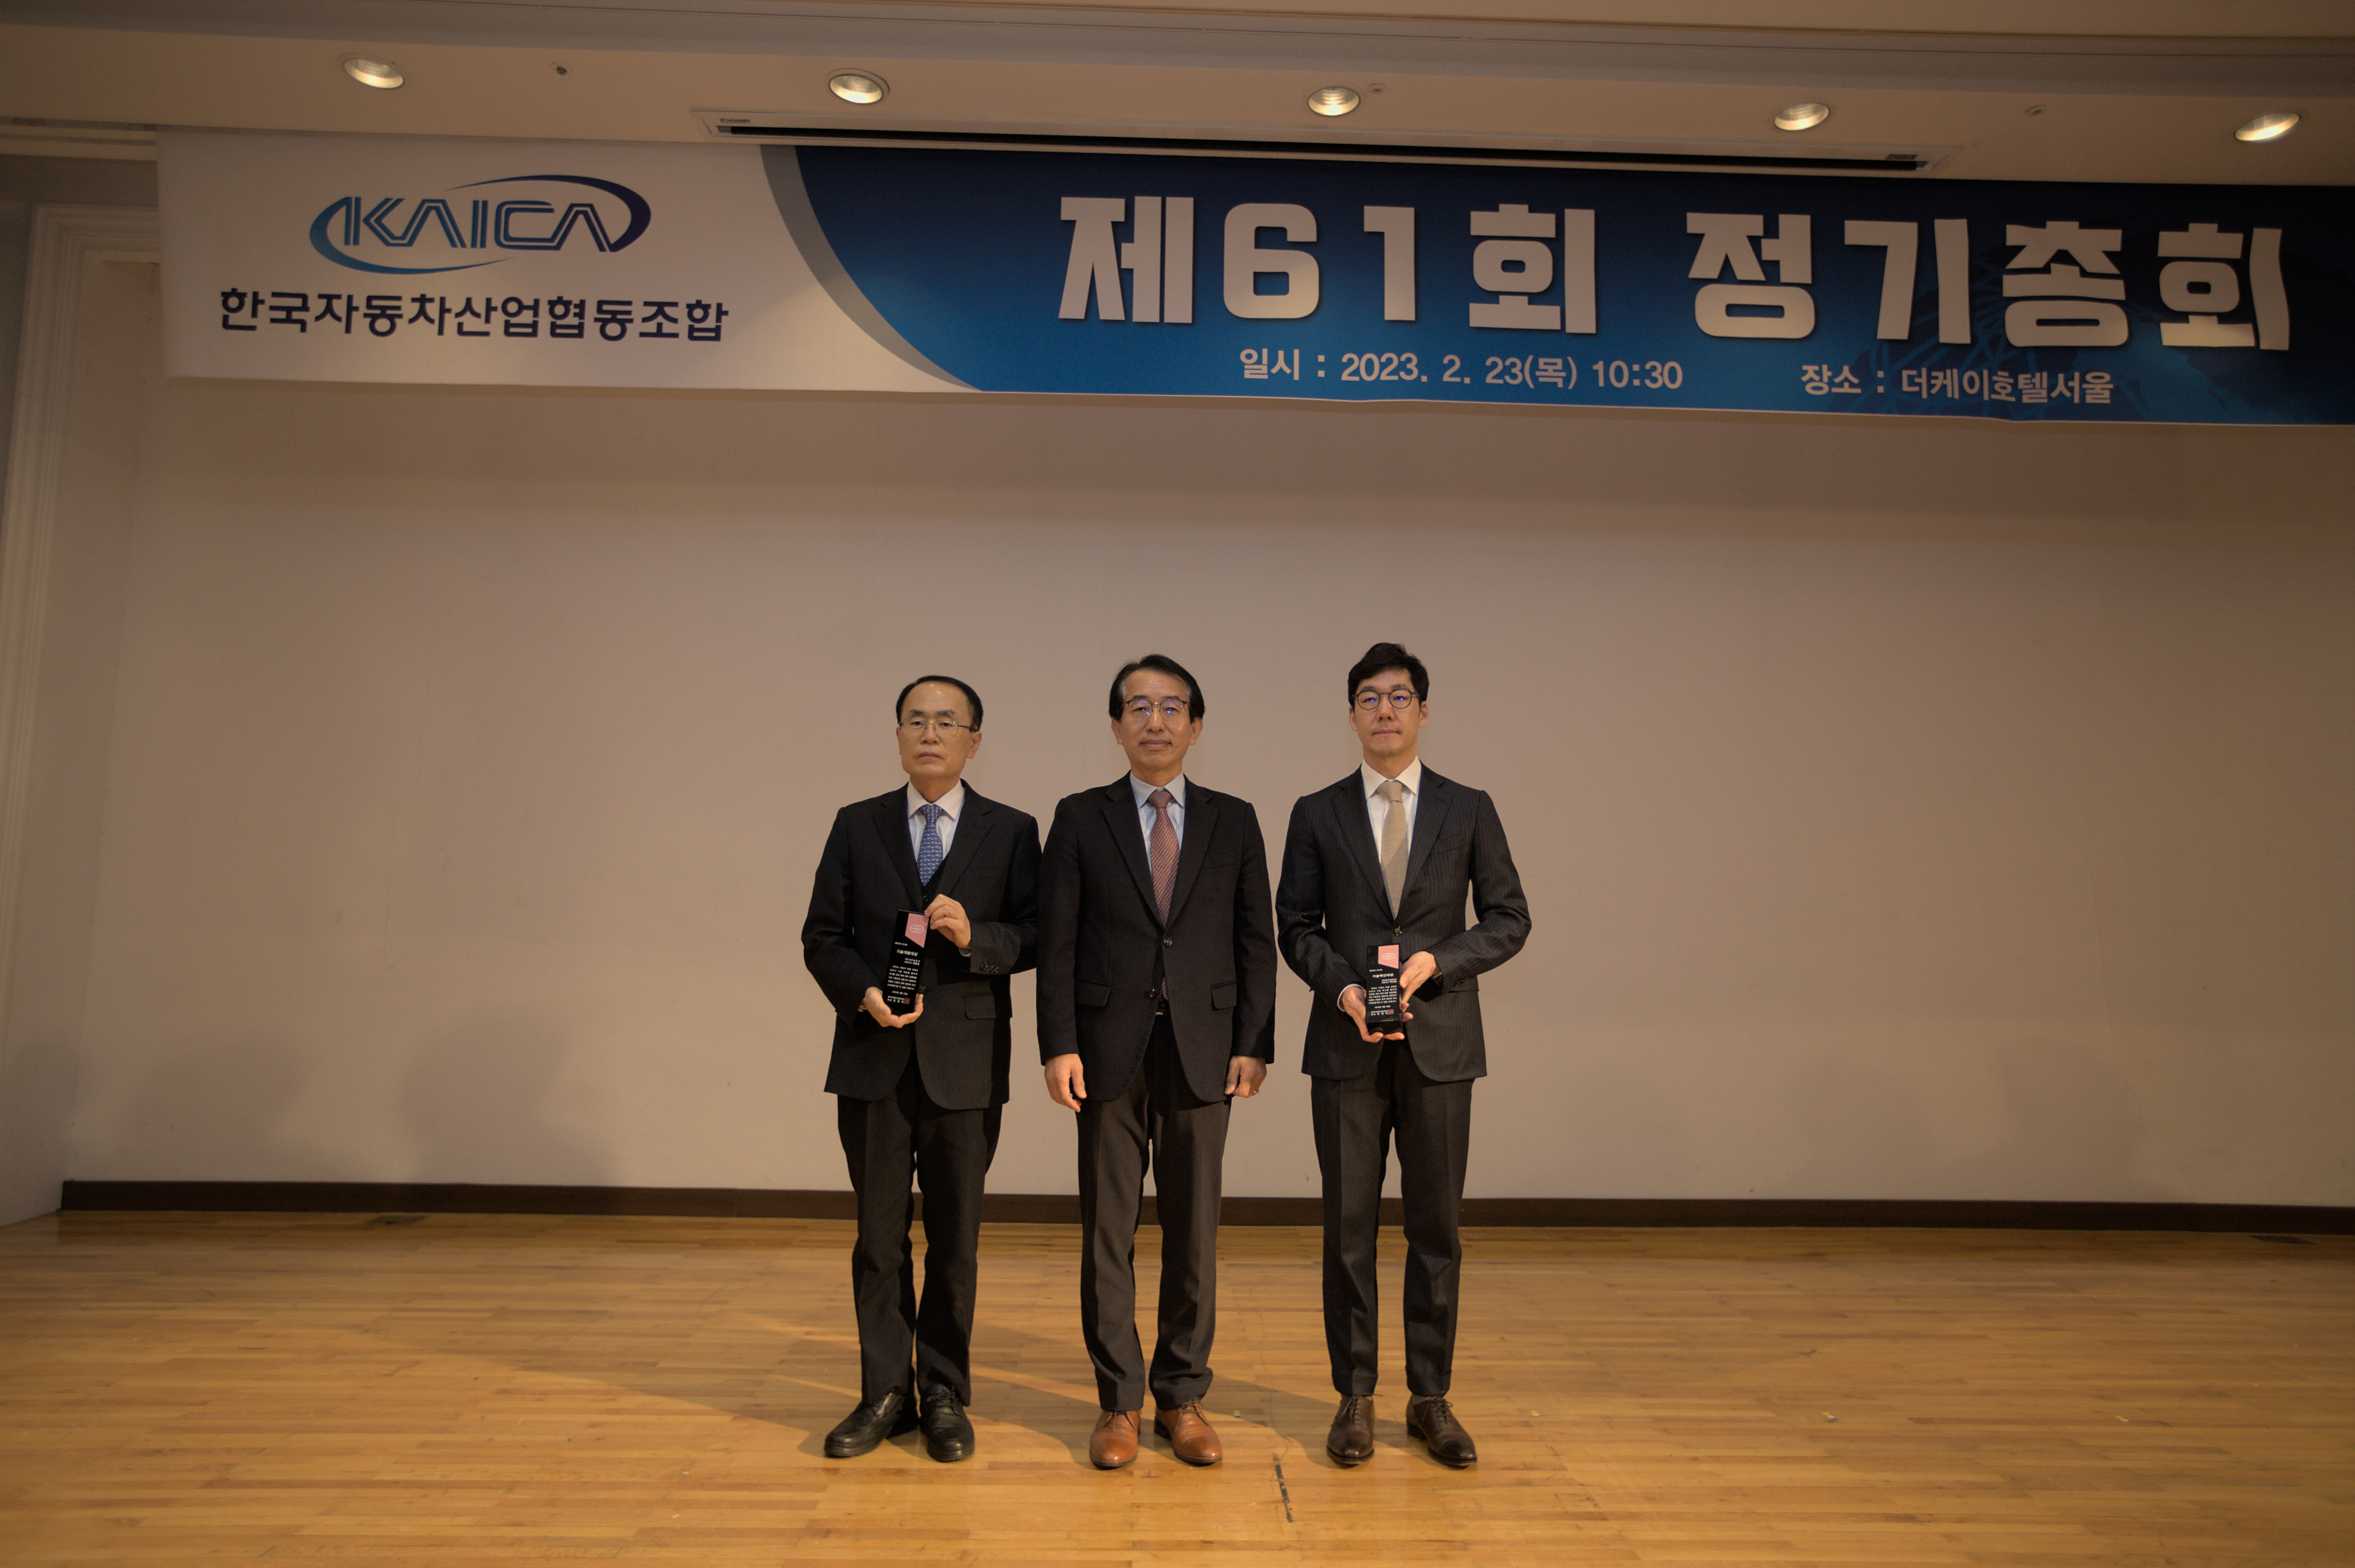 조합원사 태양금속공업(주) - 한국자동차공학회로부터 '기술혁신대상' 수상 2023.2.23